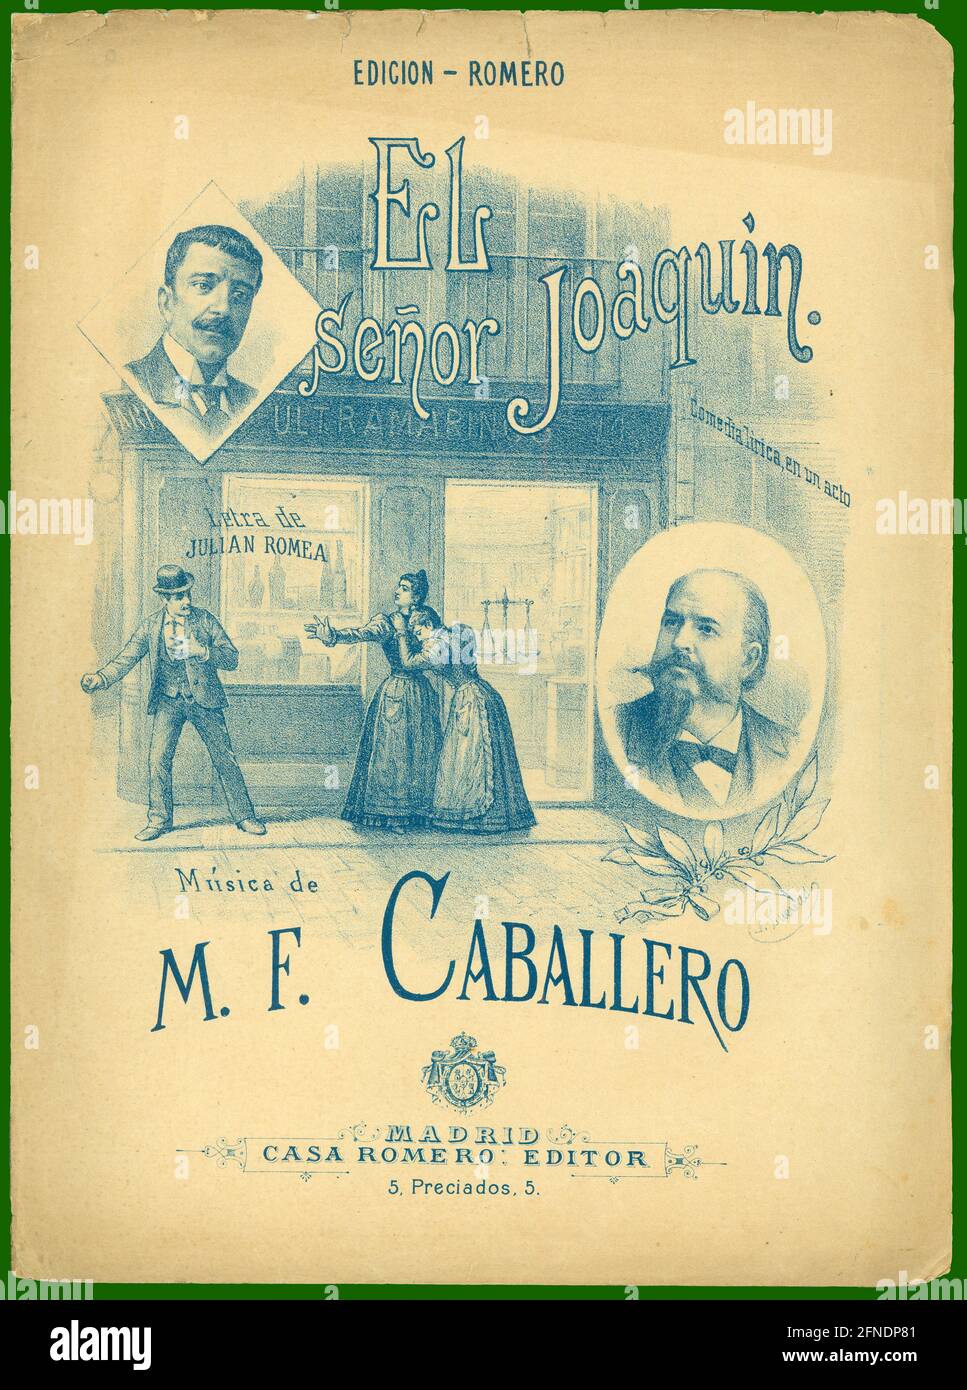 Partitura musical de la comedia lírica El señor Joaquín, de Manuel Fernández Caballero. Año 1905. Stock Photo